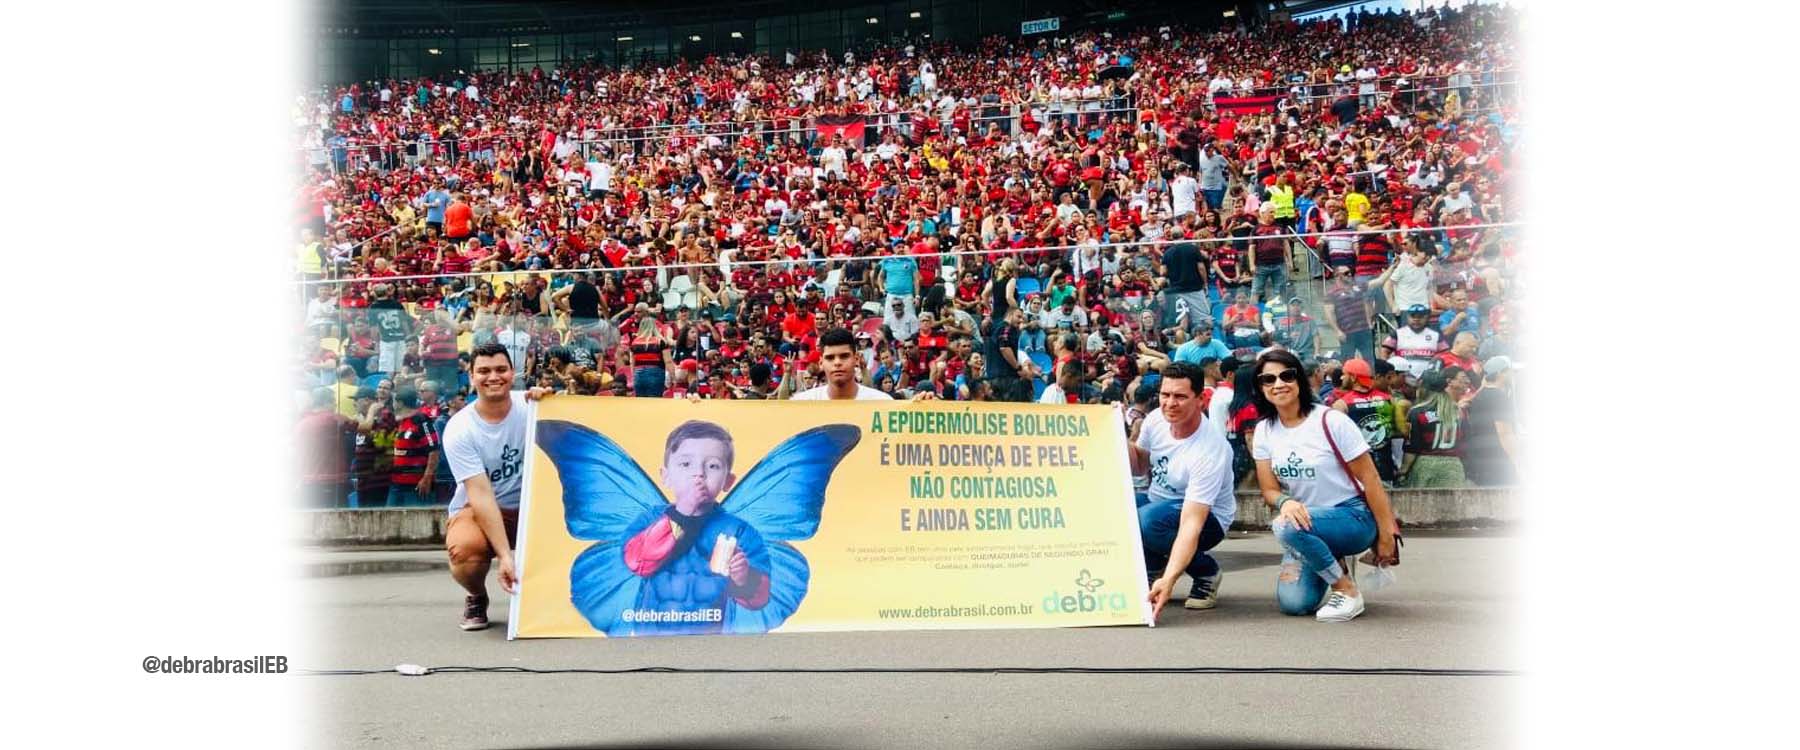 Faixa da DEBRA Brasil sobre a epidermólise bolhosa (EB) em um estádio de futebol lotado